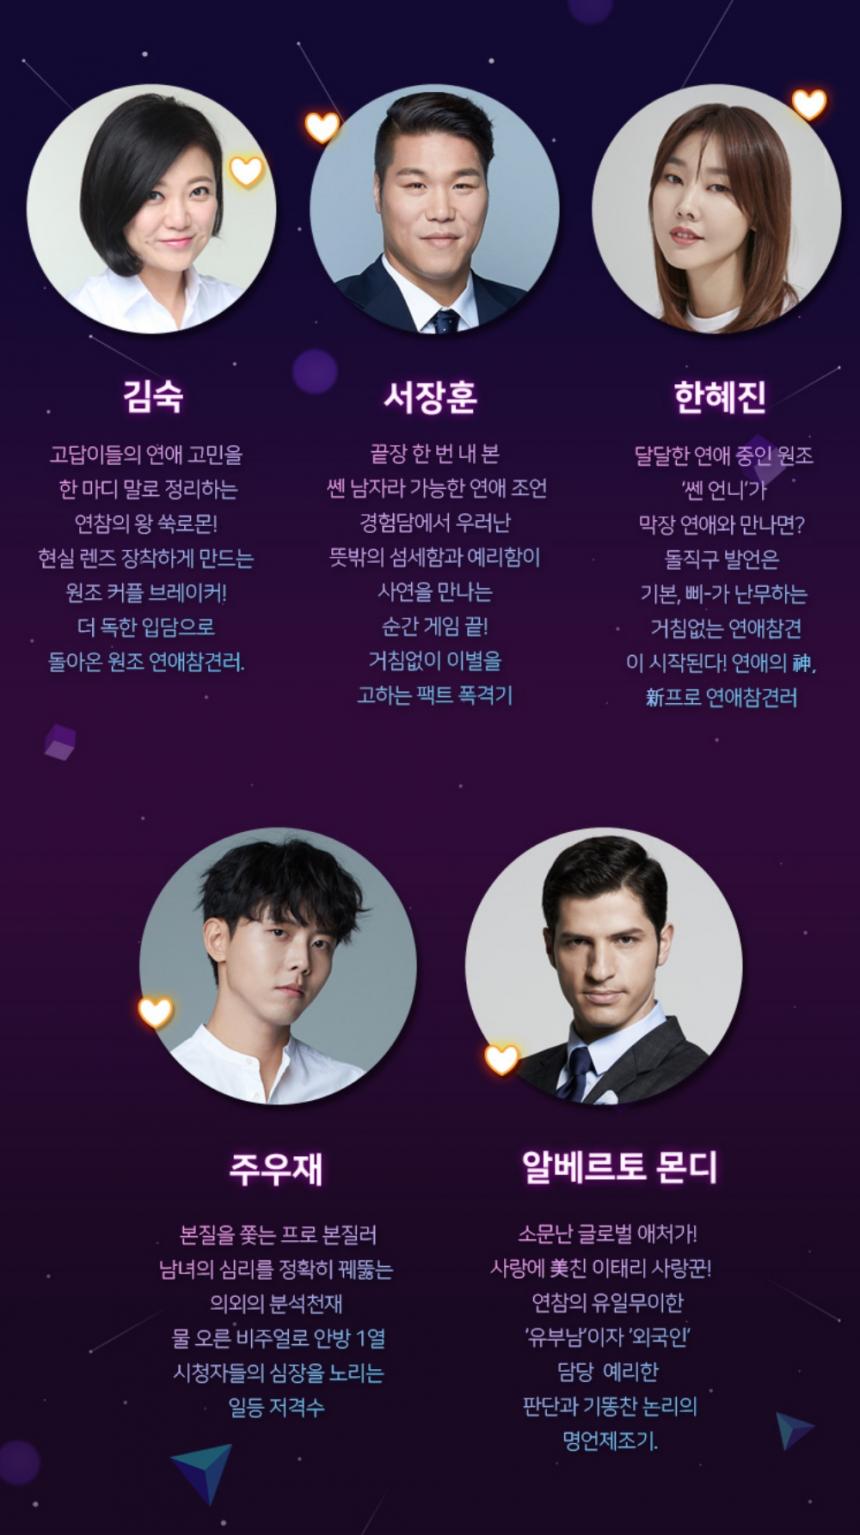 KBS 조이 ‘연애의 참견 시즌2’ 홈페이지